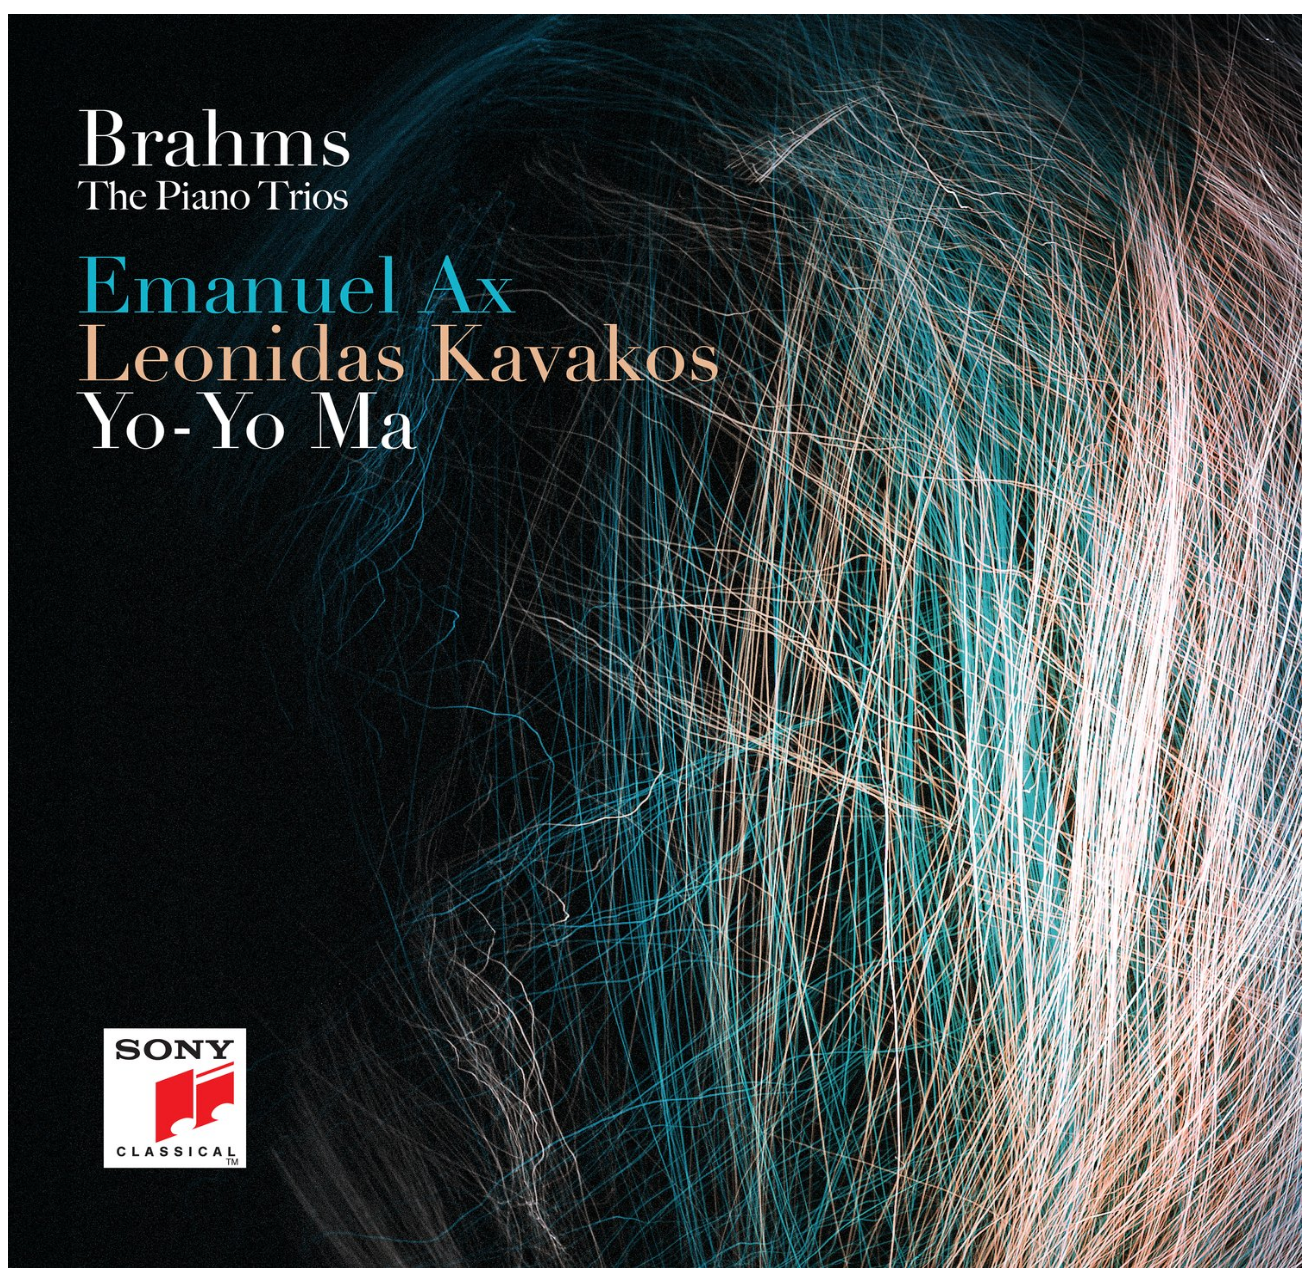 Emanuel Ax, Leonidas Kavakos, and Yo-Yo Ma | Brahms: The Piano Trios